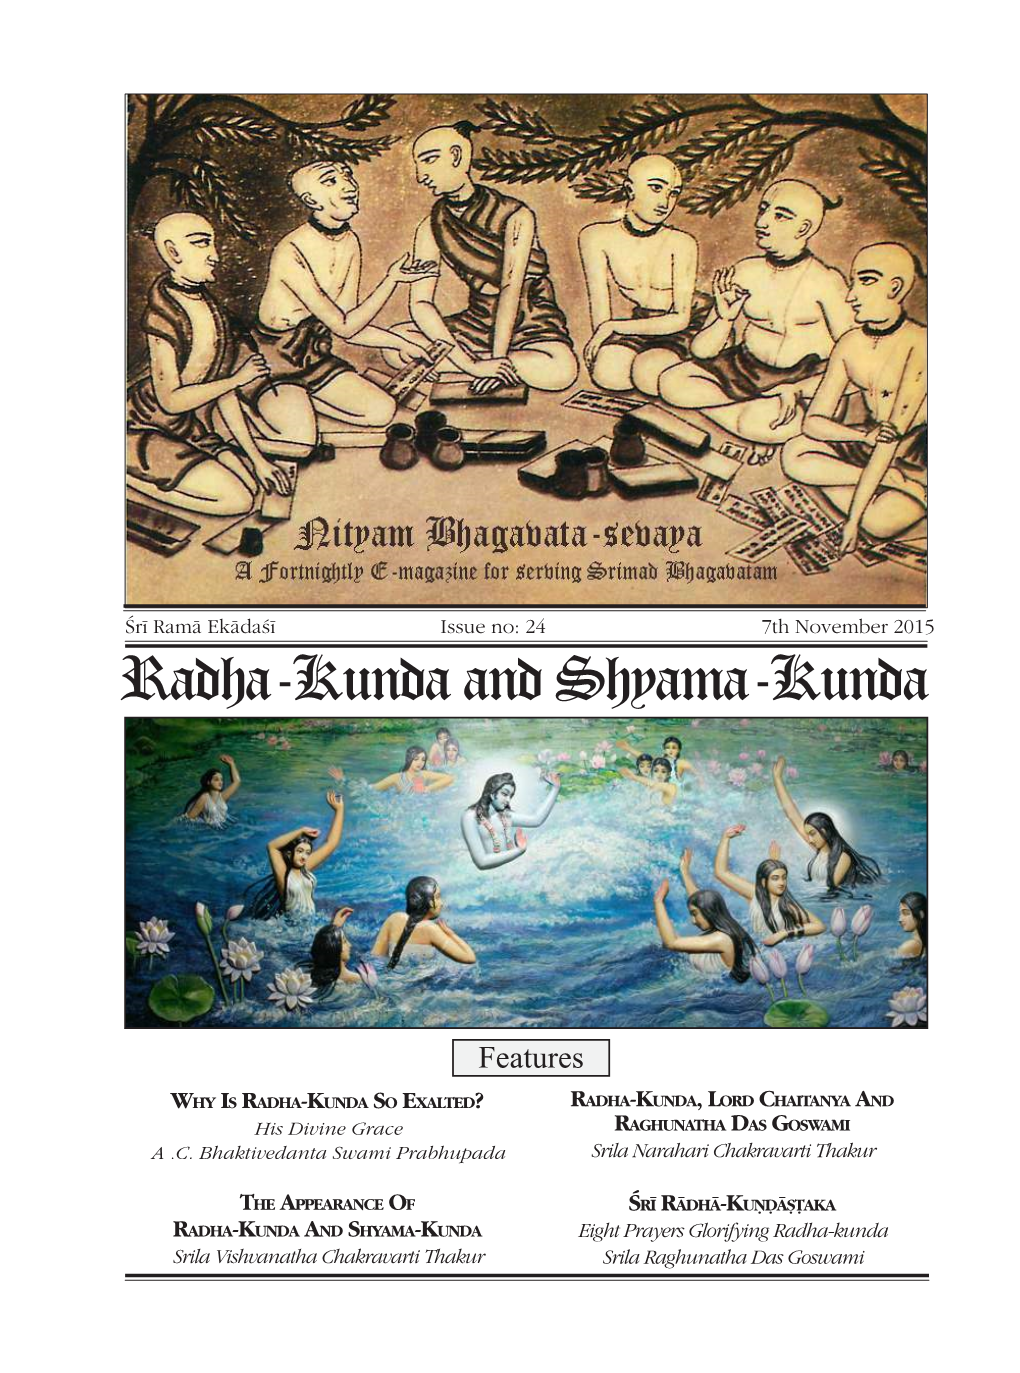 Radha-Kunda and Shyama-Kunda